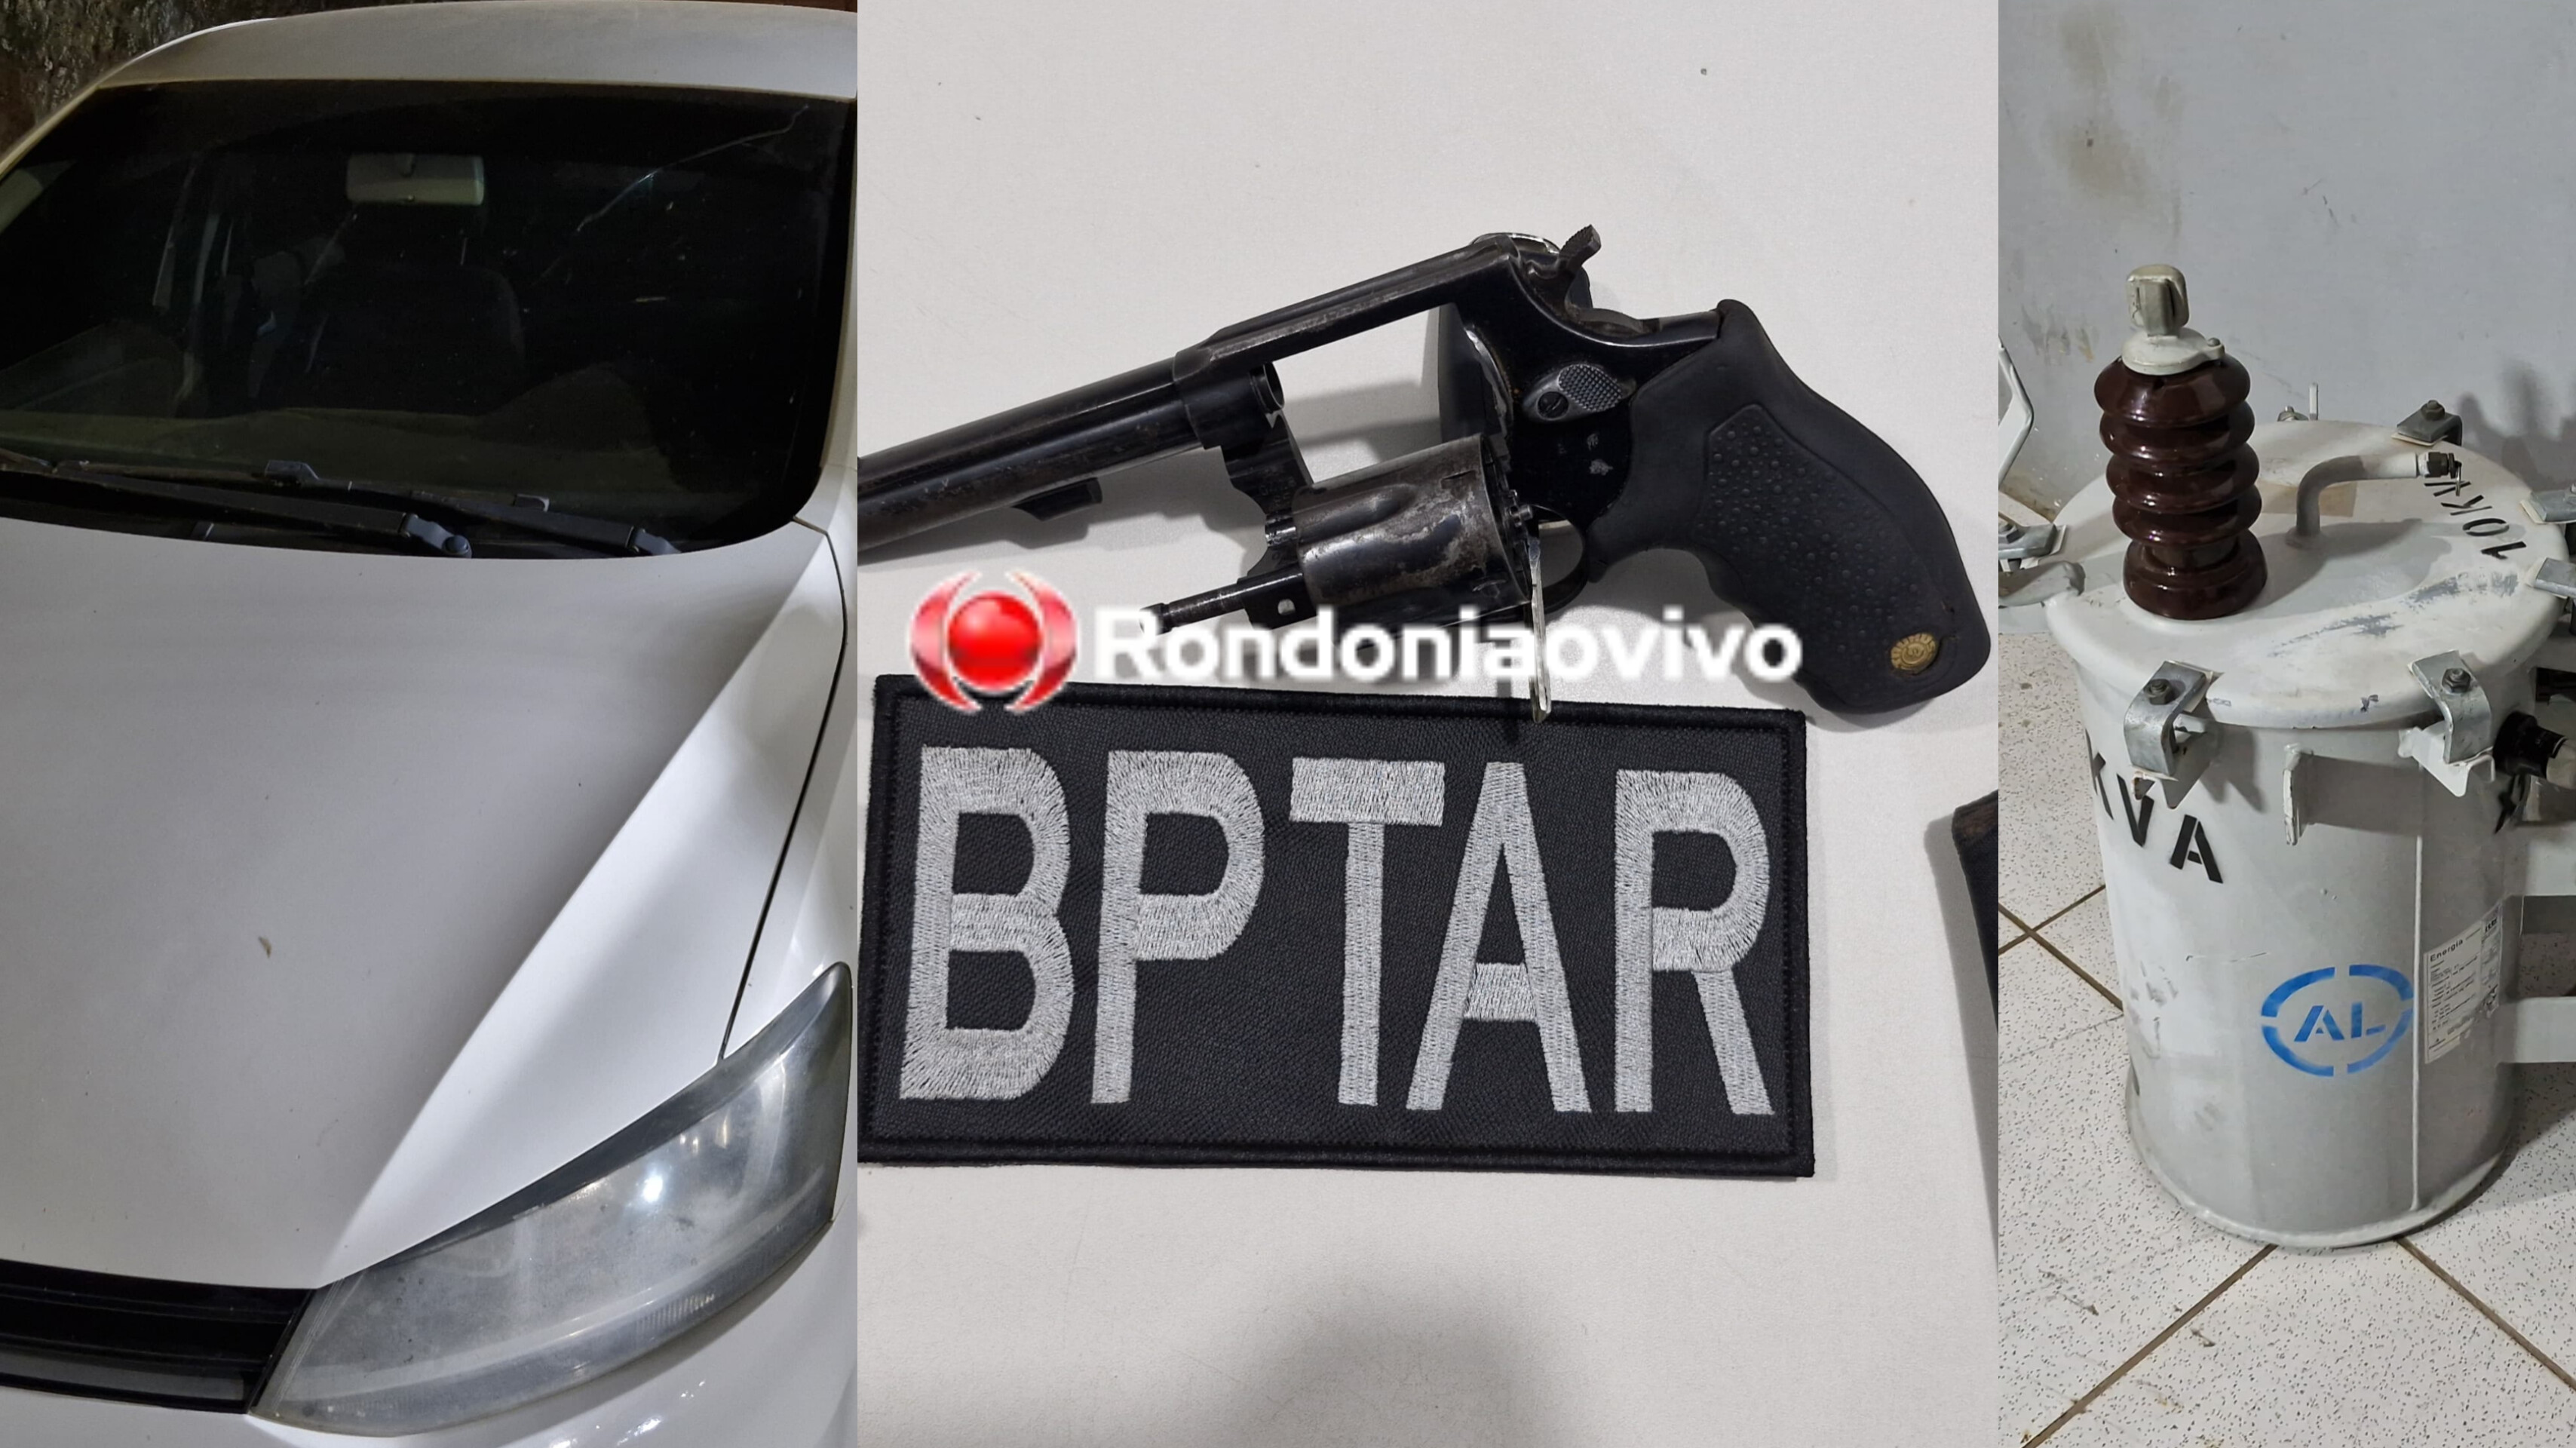 AÇÃO DO BPTAR: Motorista de Fox é preso com arma roubada em Minas Gerais